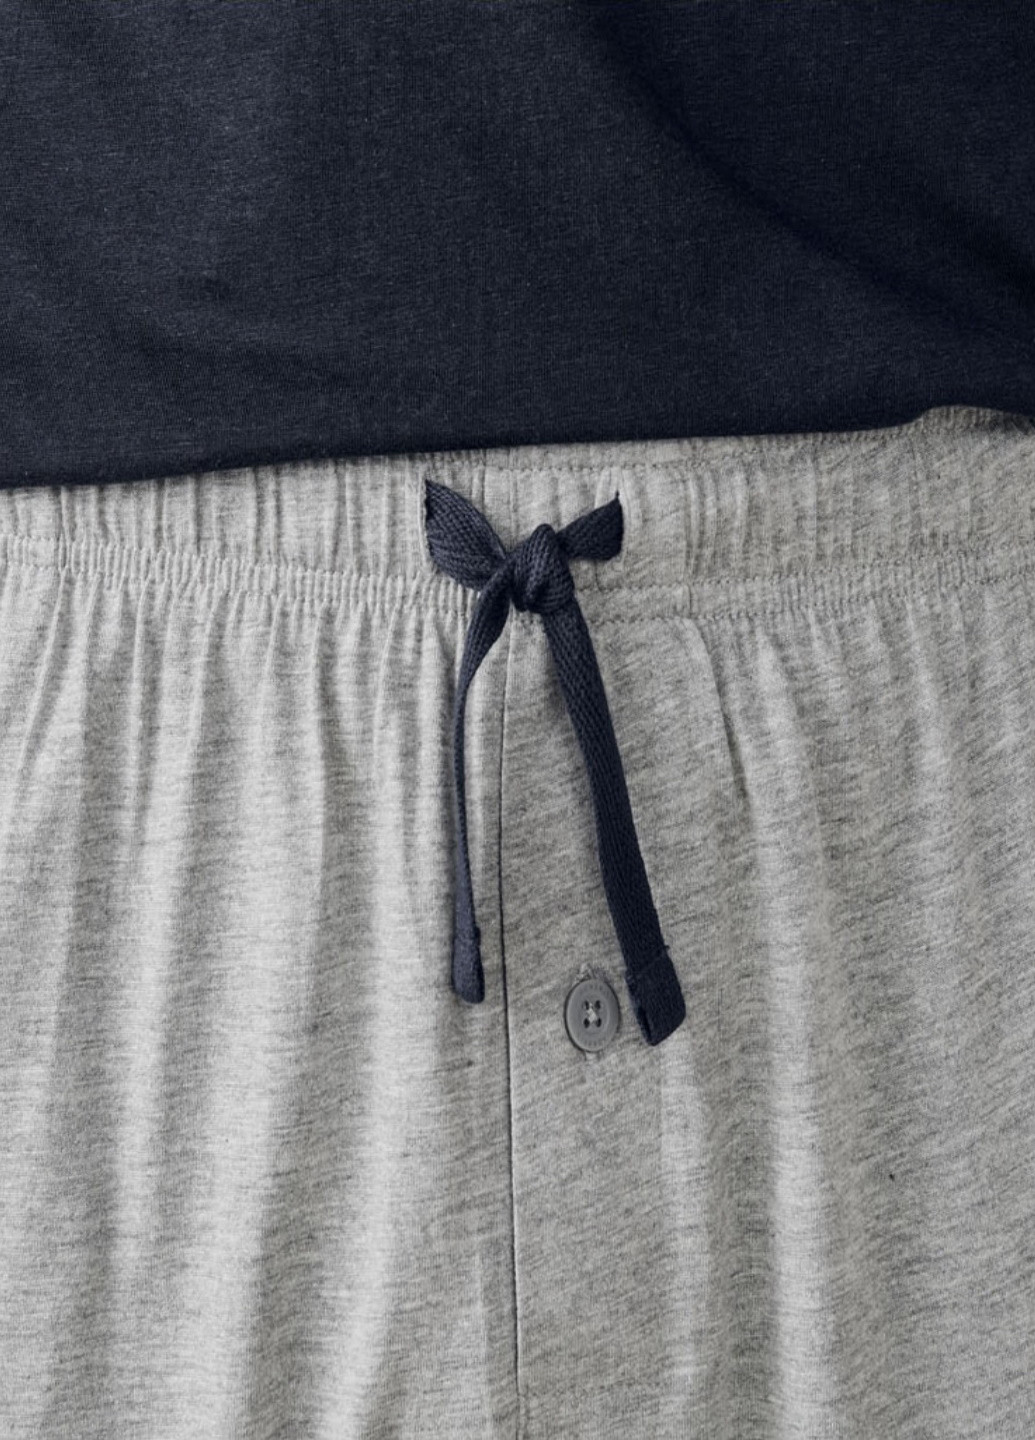 Піжама (футболка, шорти) Livergy футболка + штани однотонна комбінована домашня трикотаж, бавовна